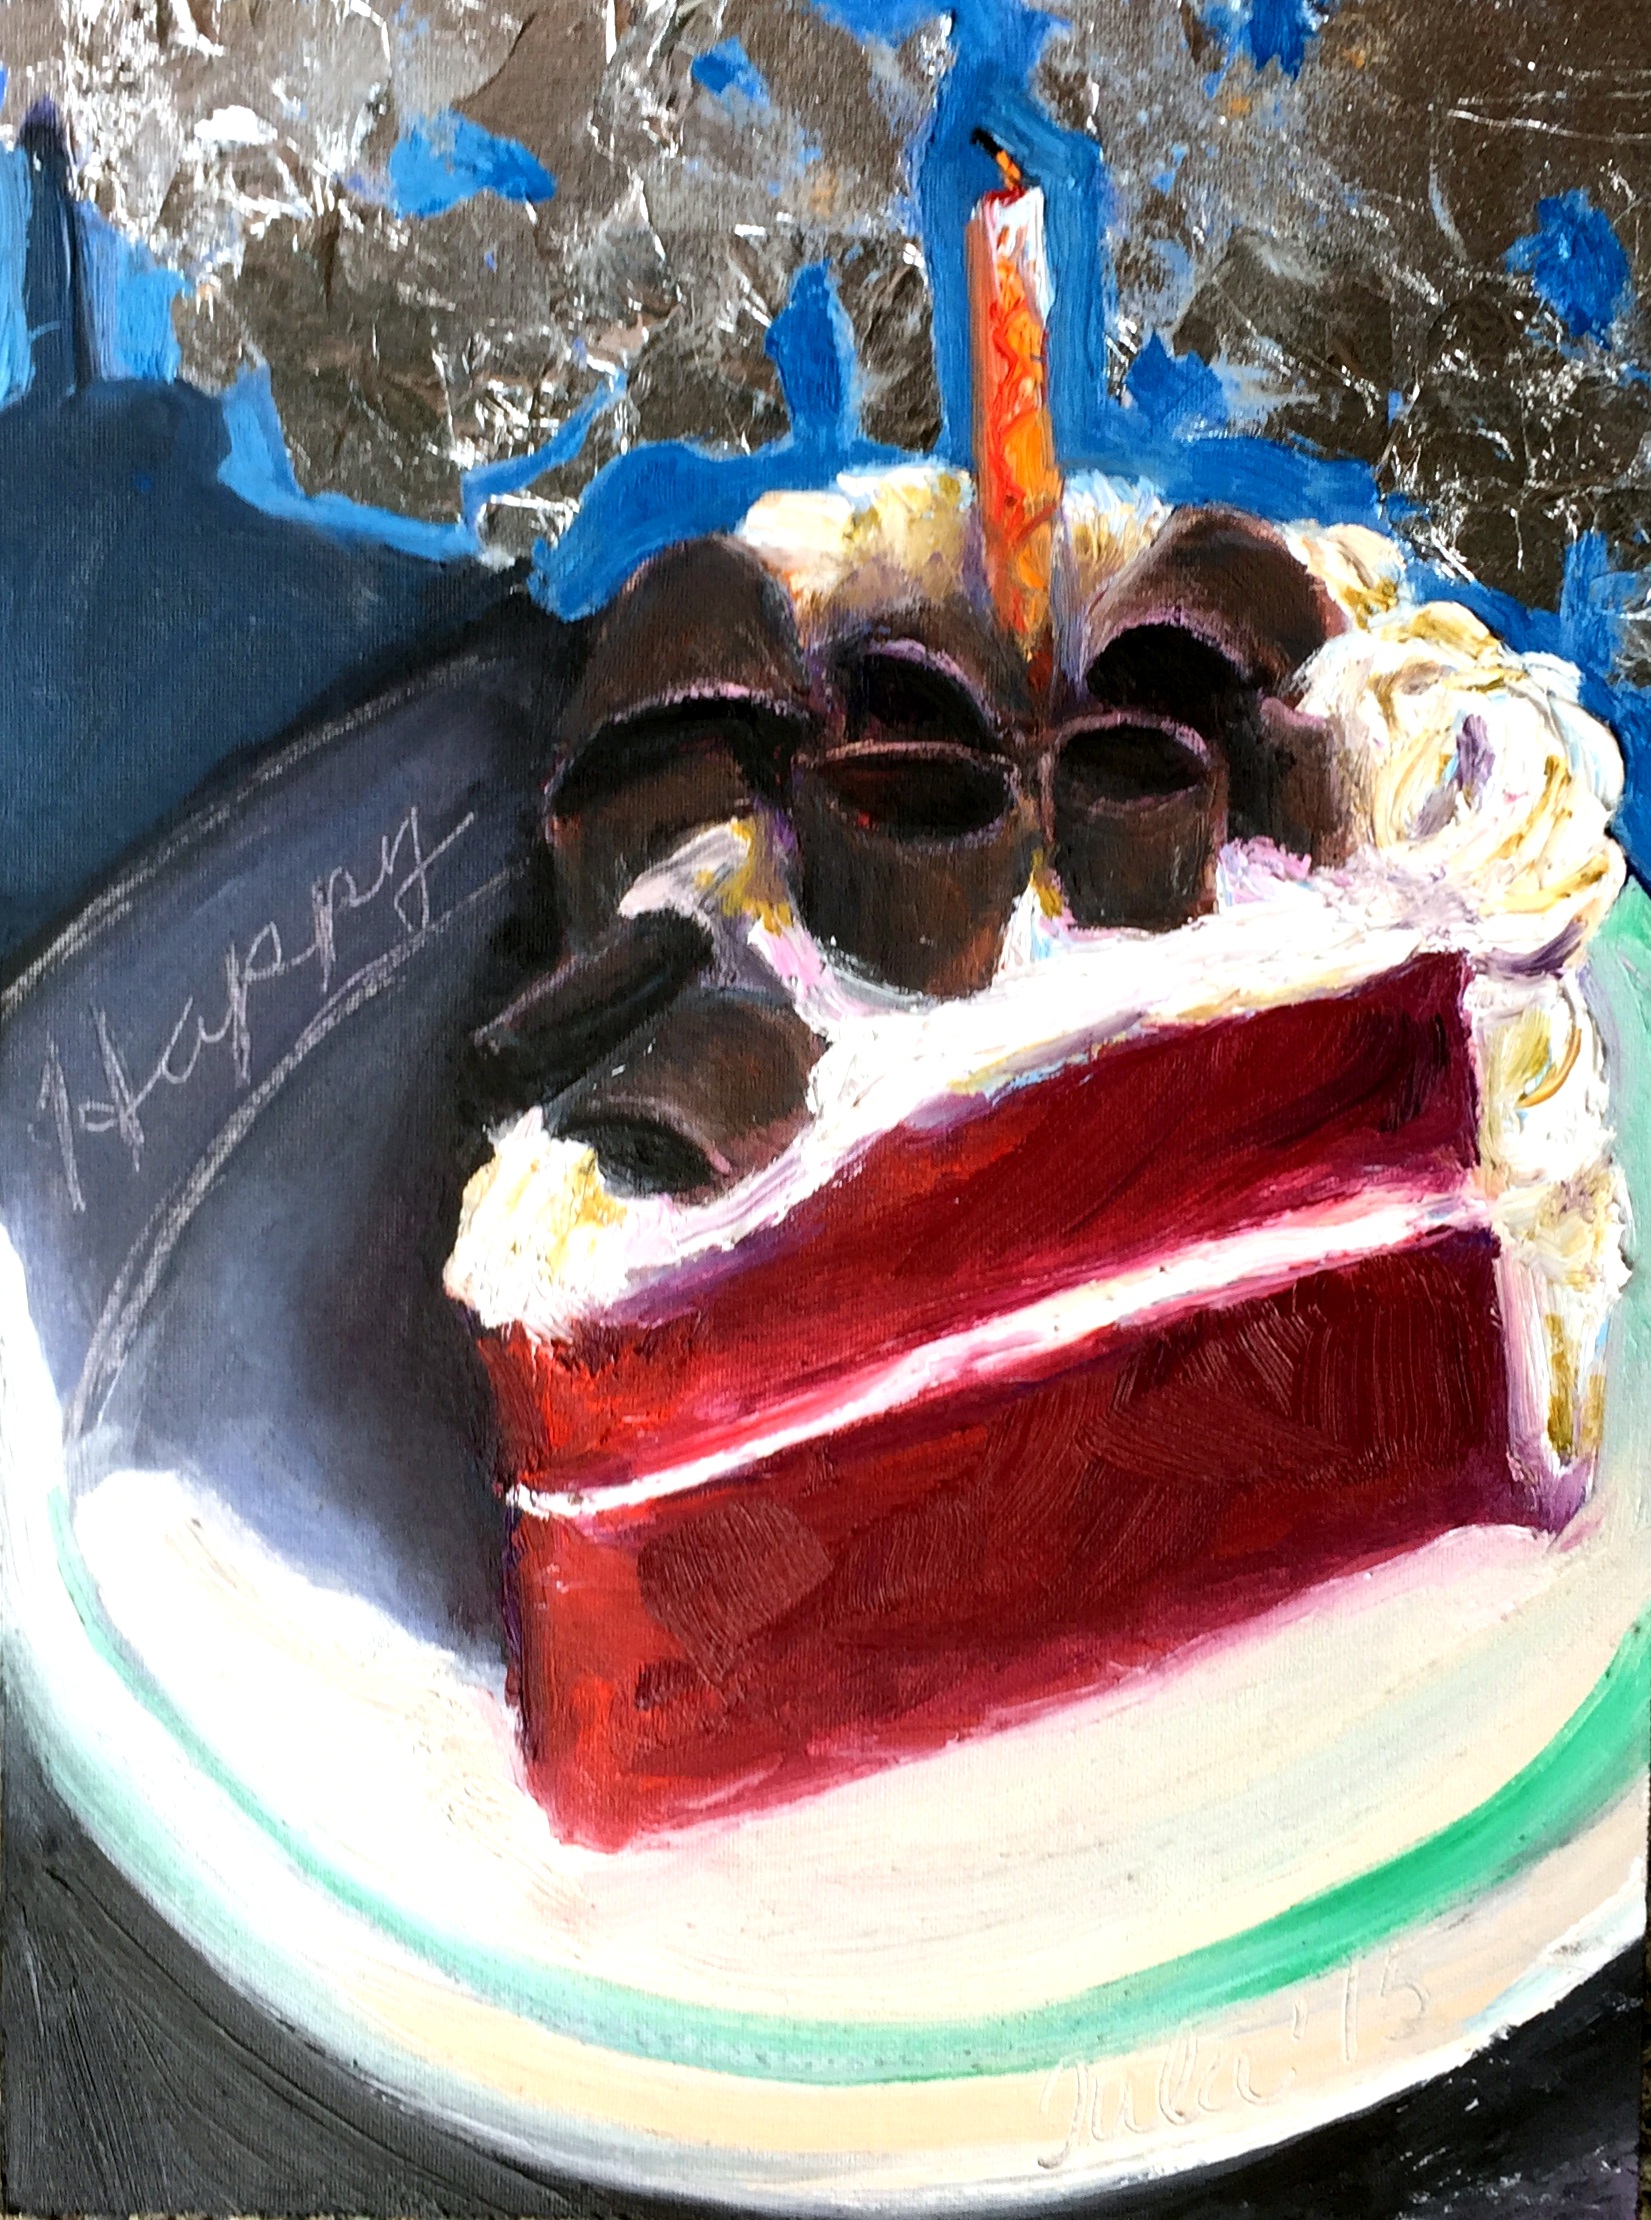 Red Velvet Cake- Copyright 2015